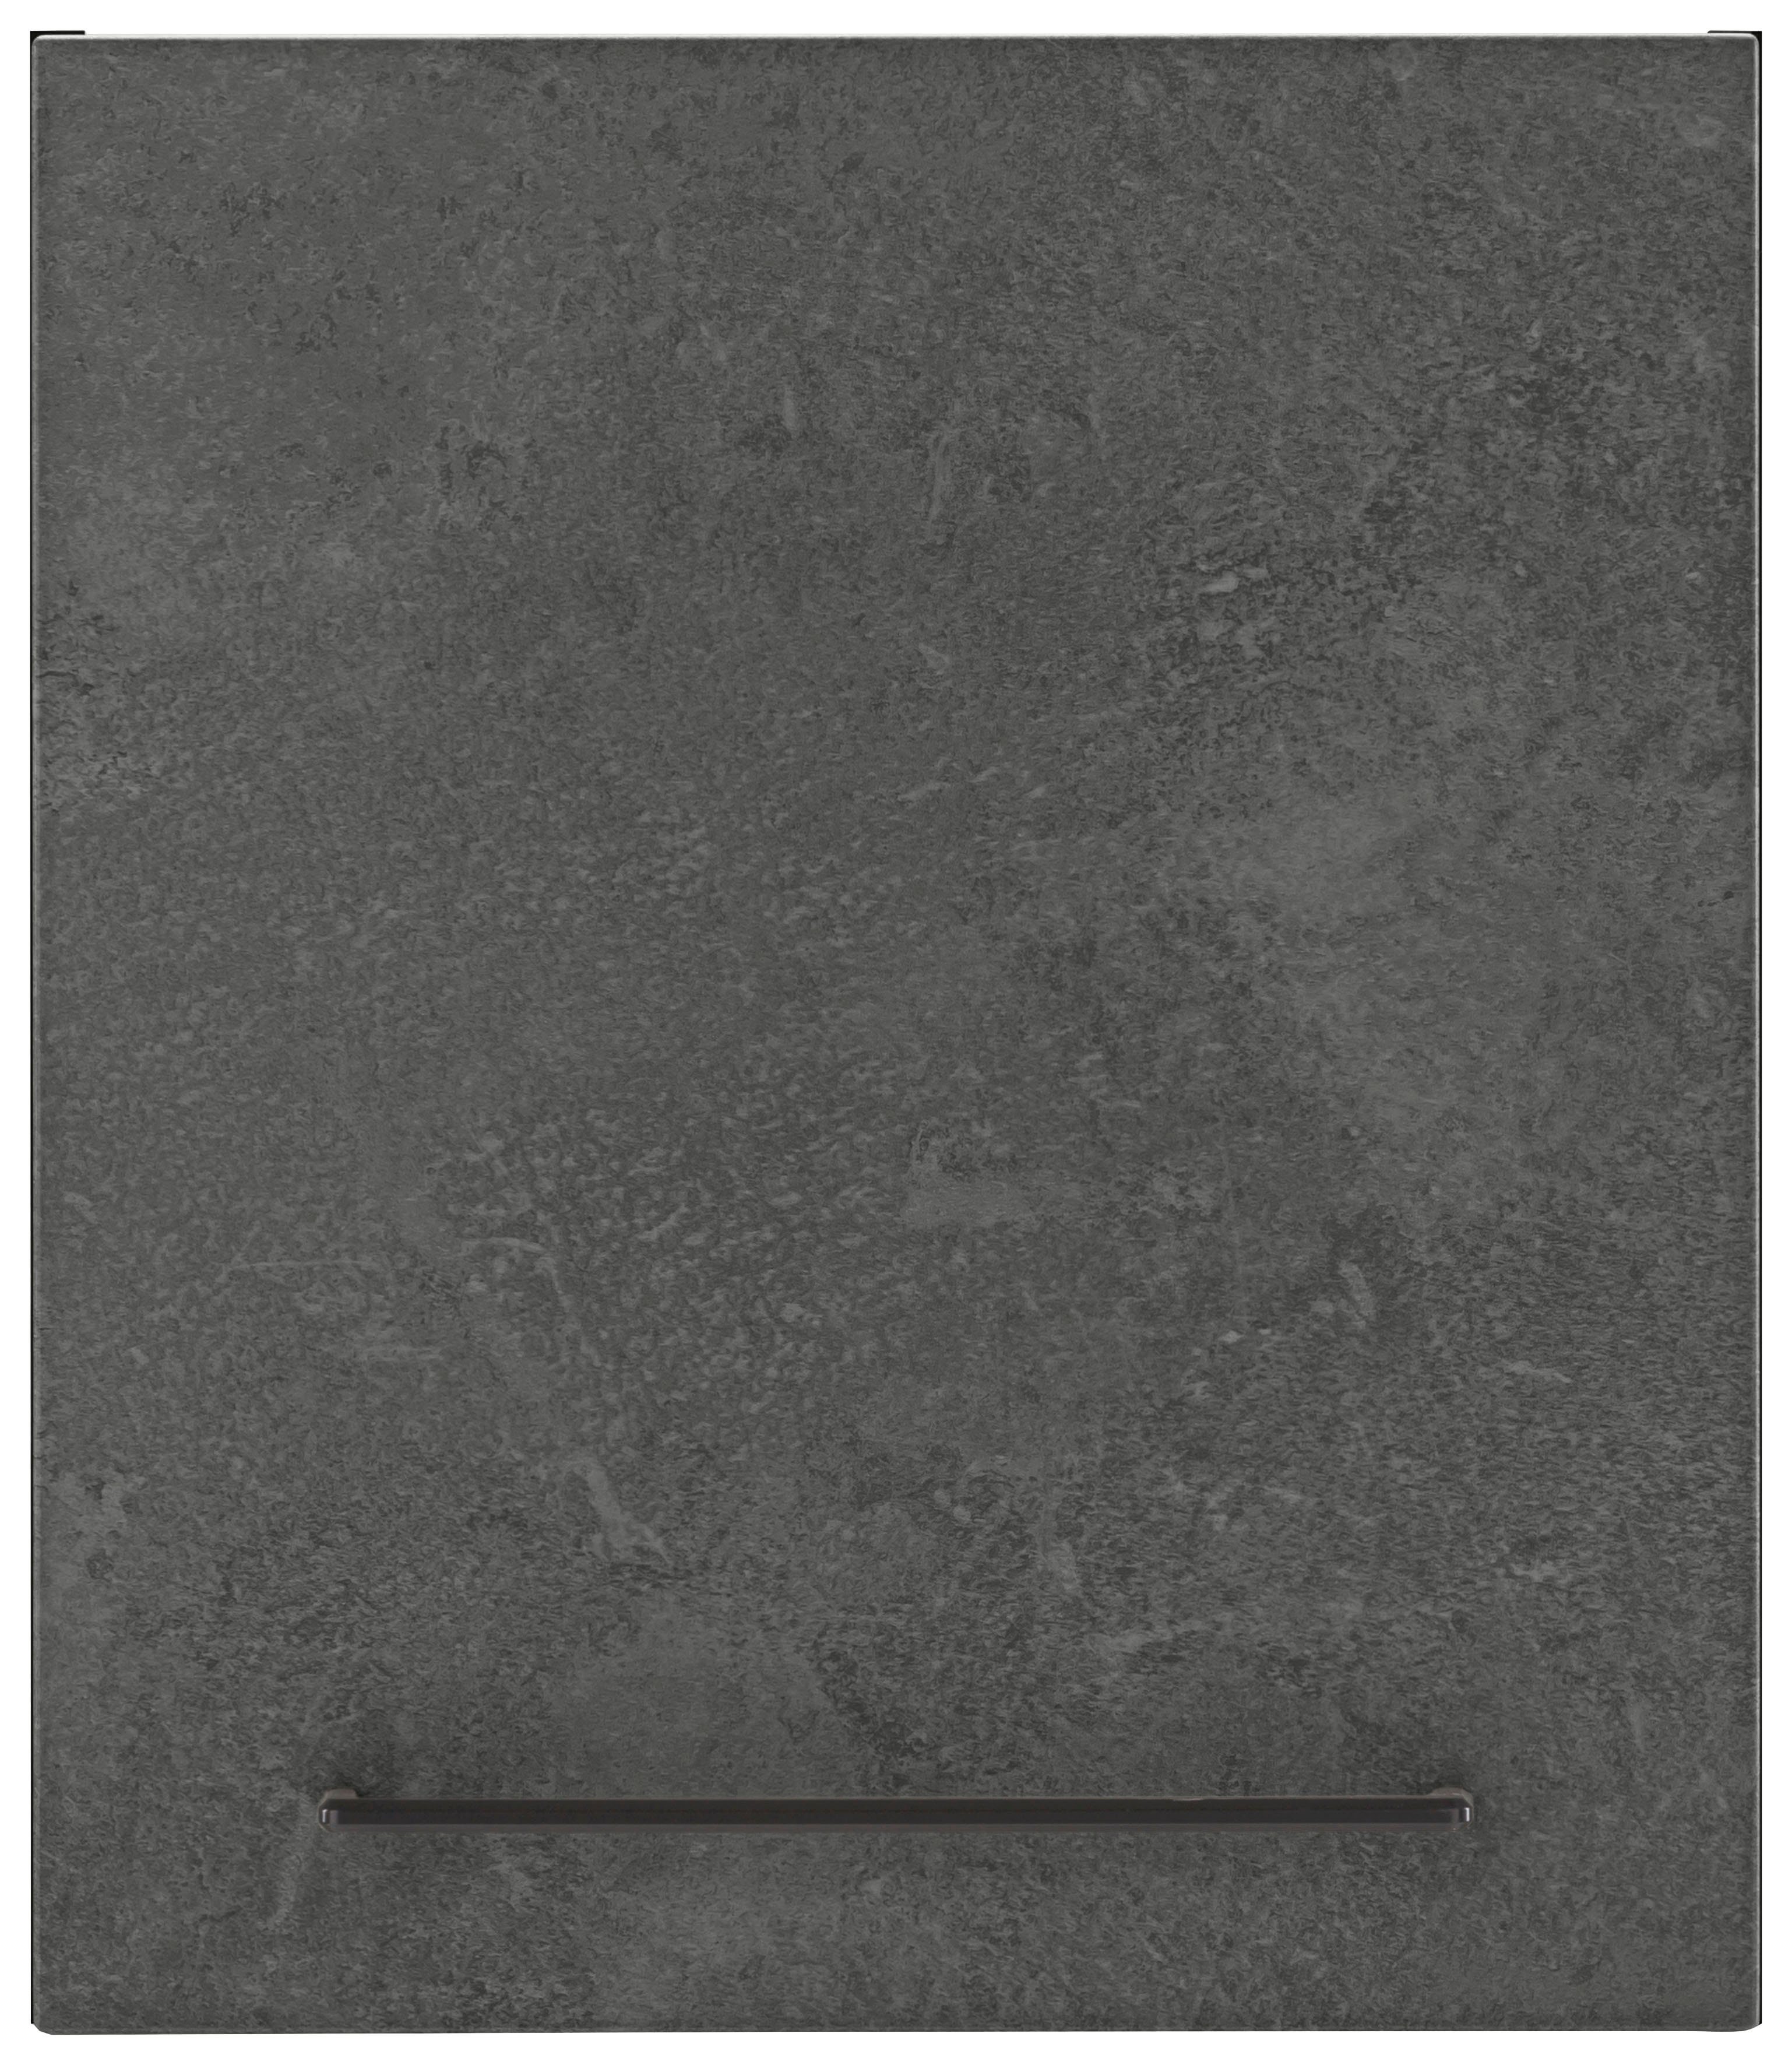 HELD MÖBEL Hängeschrank Tulsa 50 cm breit, 57 cm hoch, 1 Tür, schwarzer Metallgriff, MDF Front betonfarben dunkel | grafit | Hängeschränke